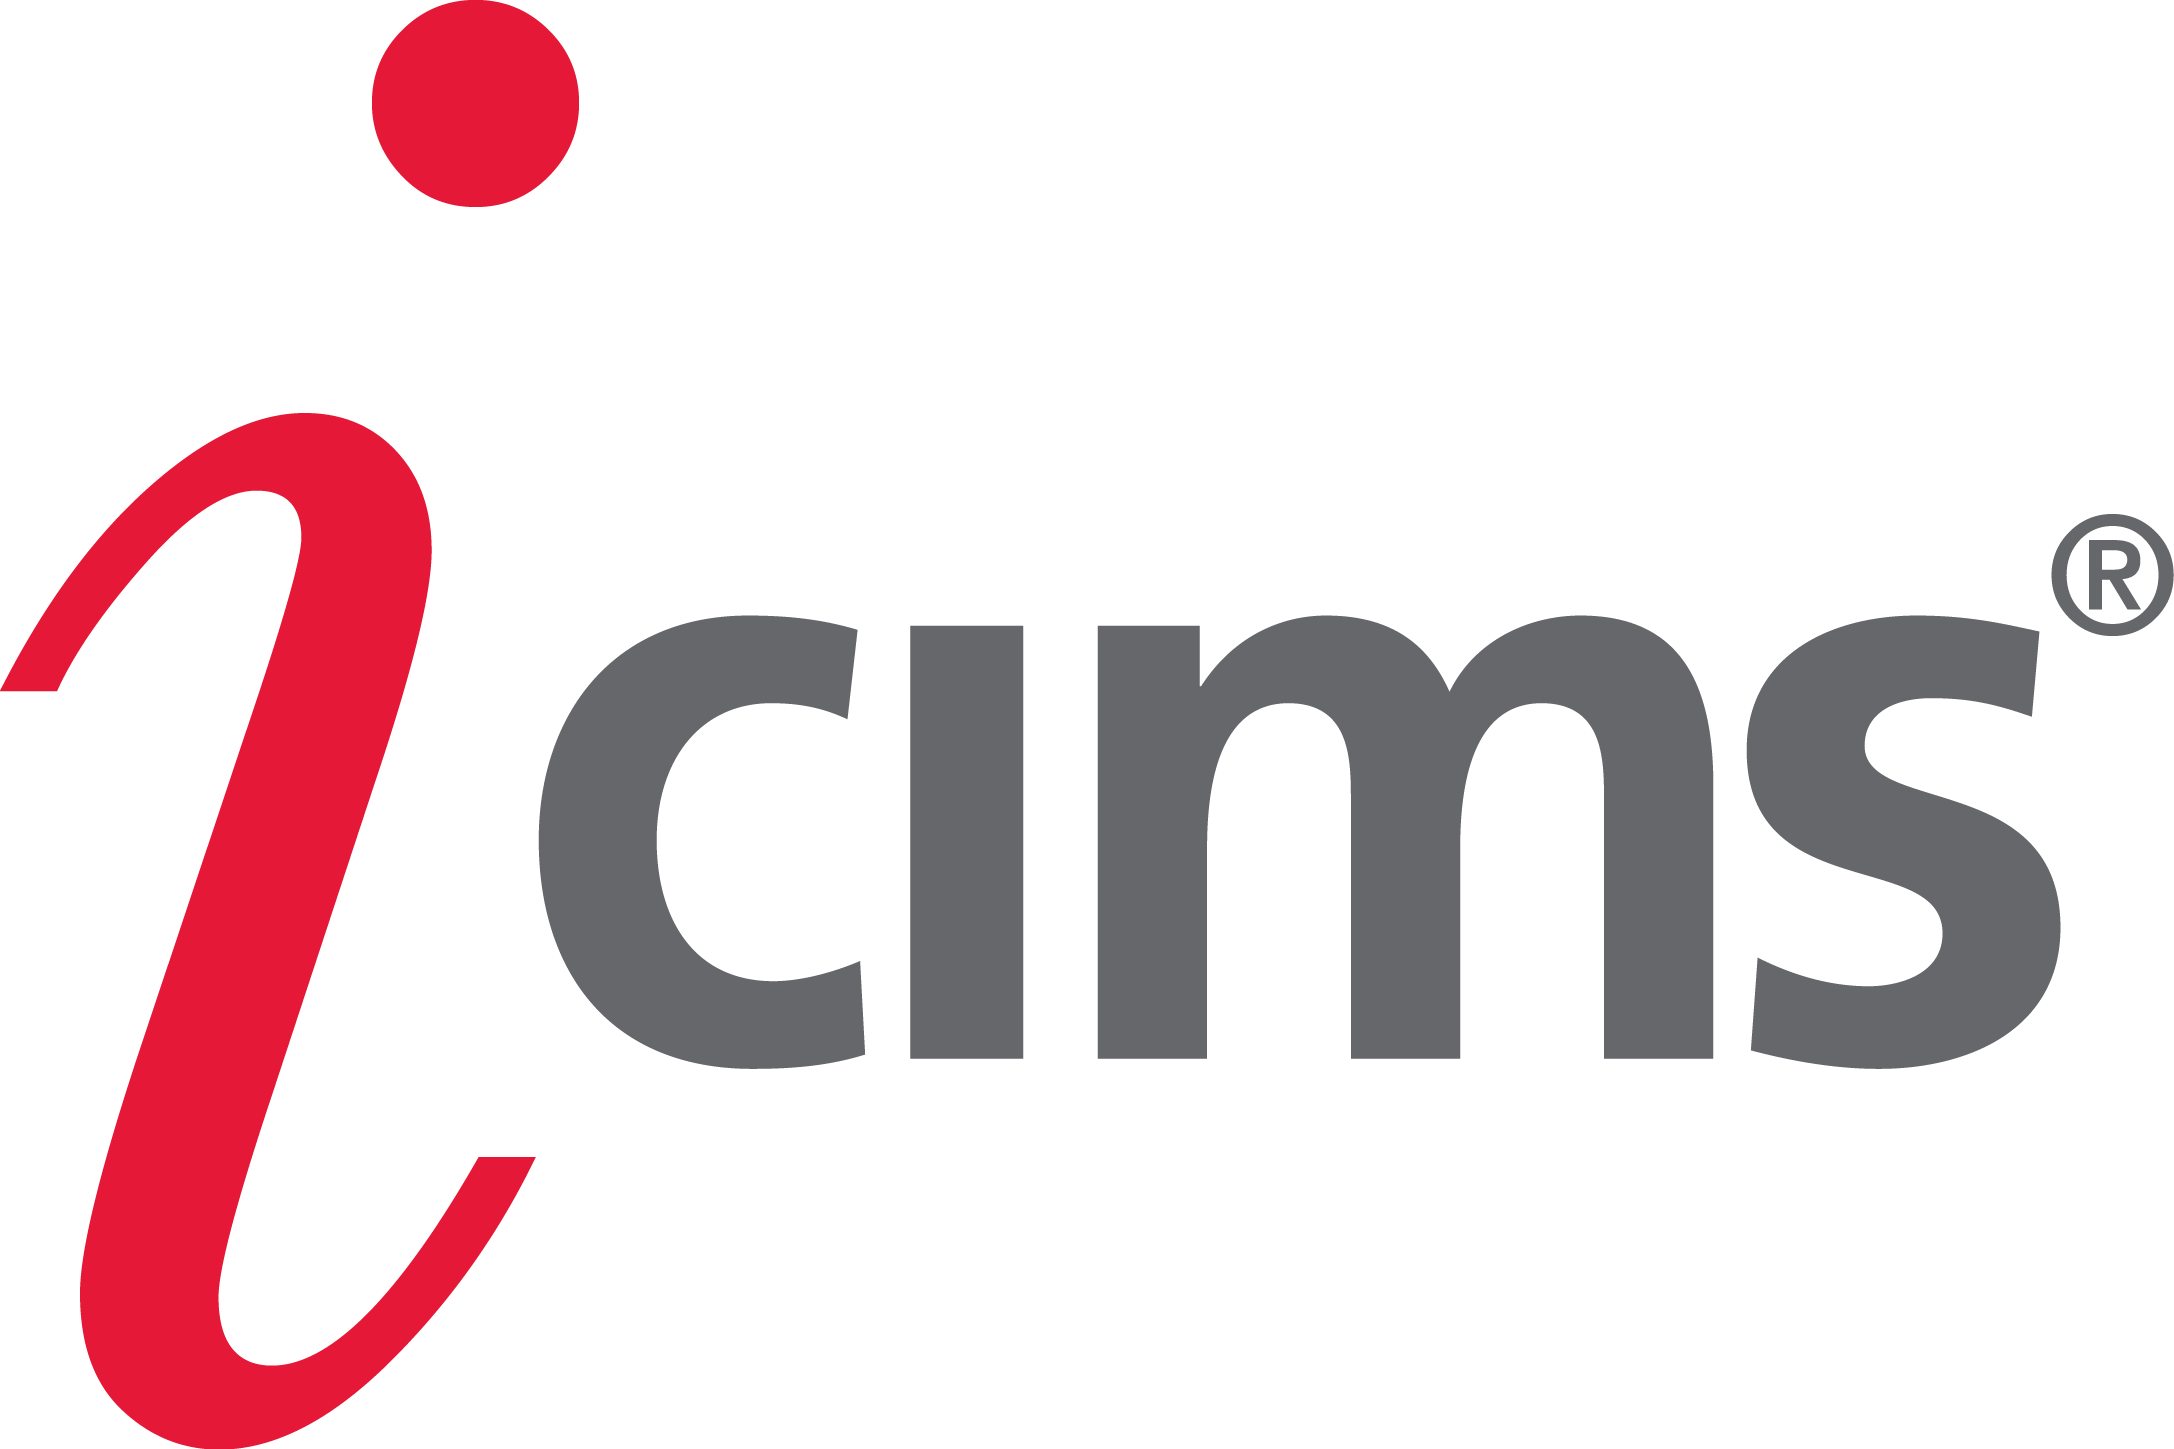 iCIMS Announces New 